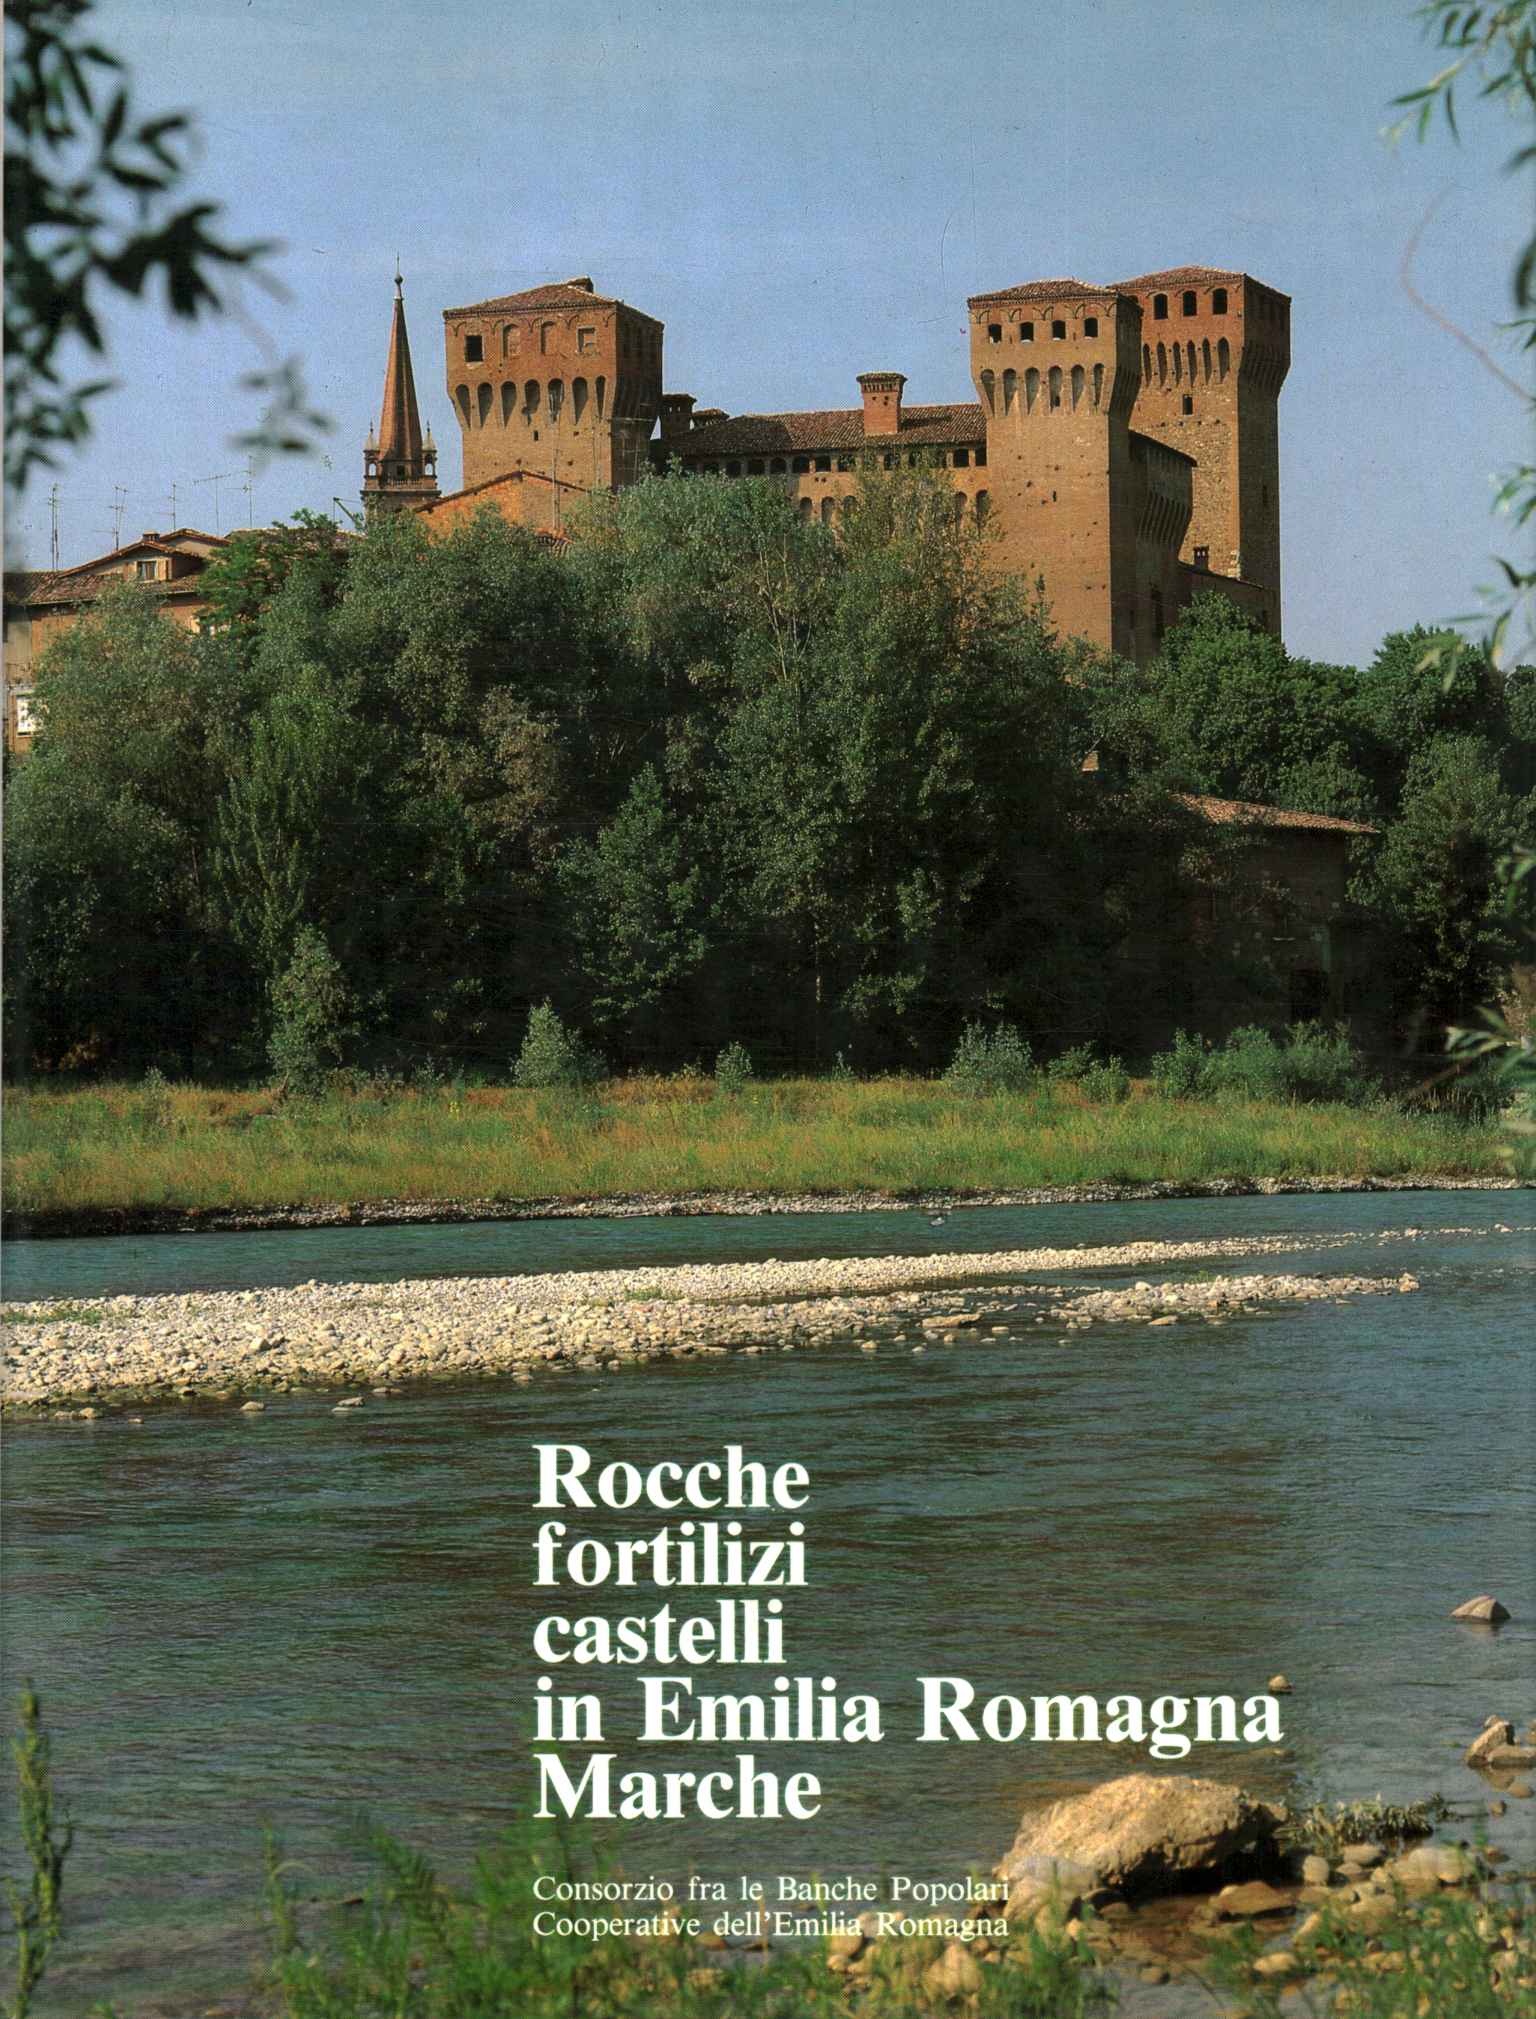 Festungen und Burgen in der Emilia Roma